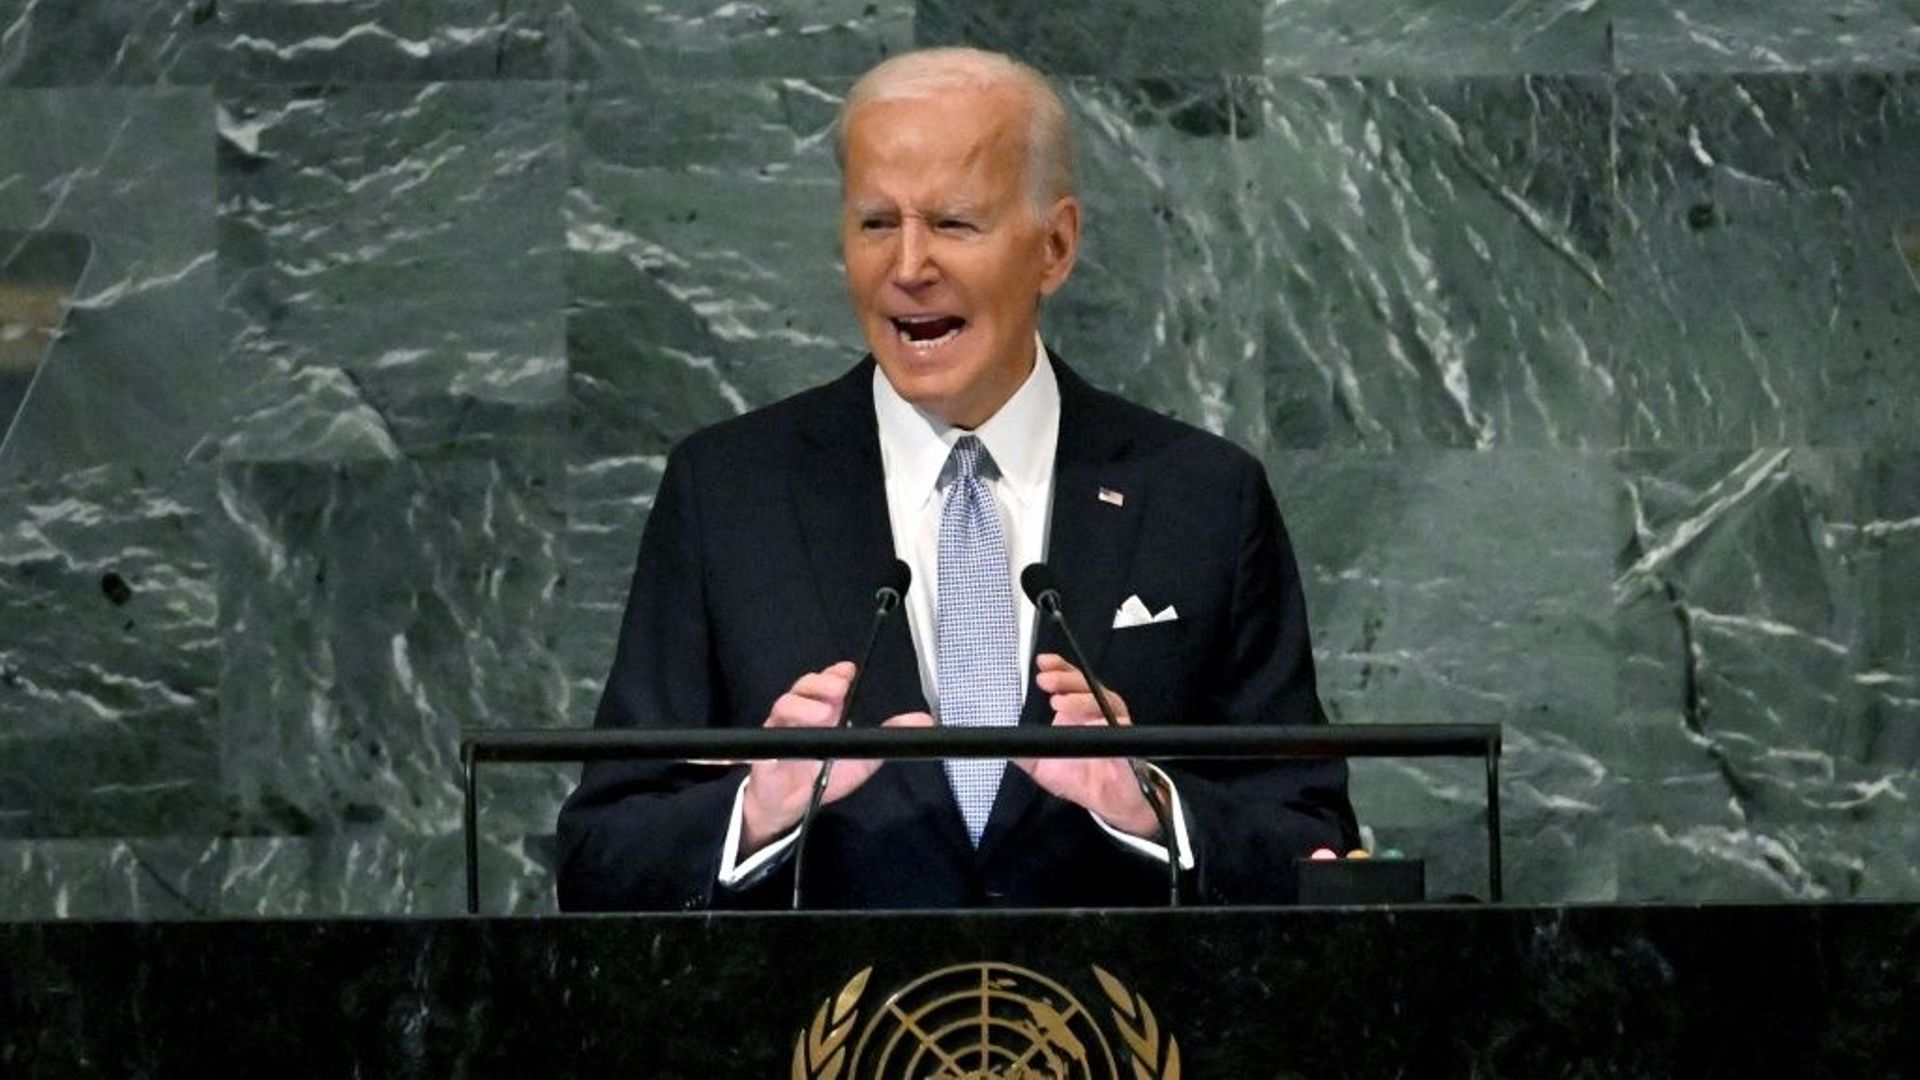 Le président des Etats-Unis Joe Biden à la tribune de l'Assemblée générale des Nations unies, le 21 septembre 2022 à New York